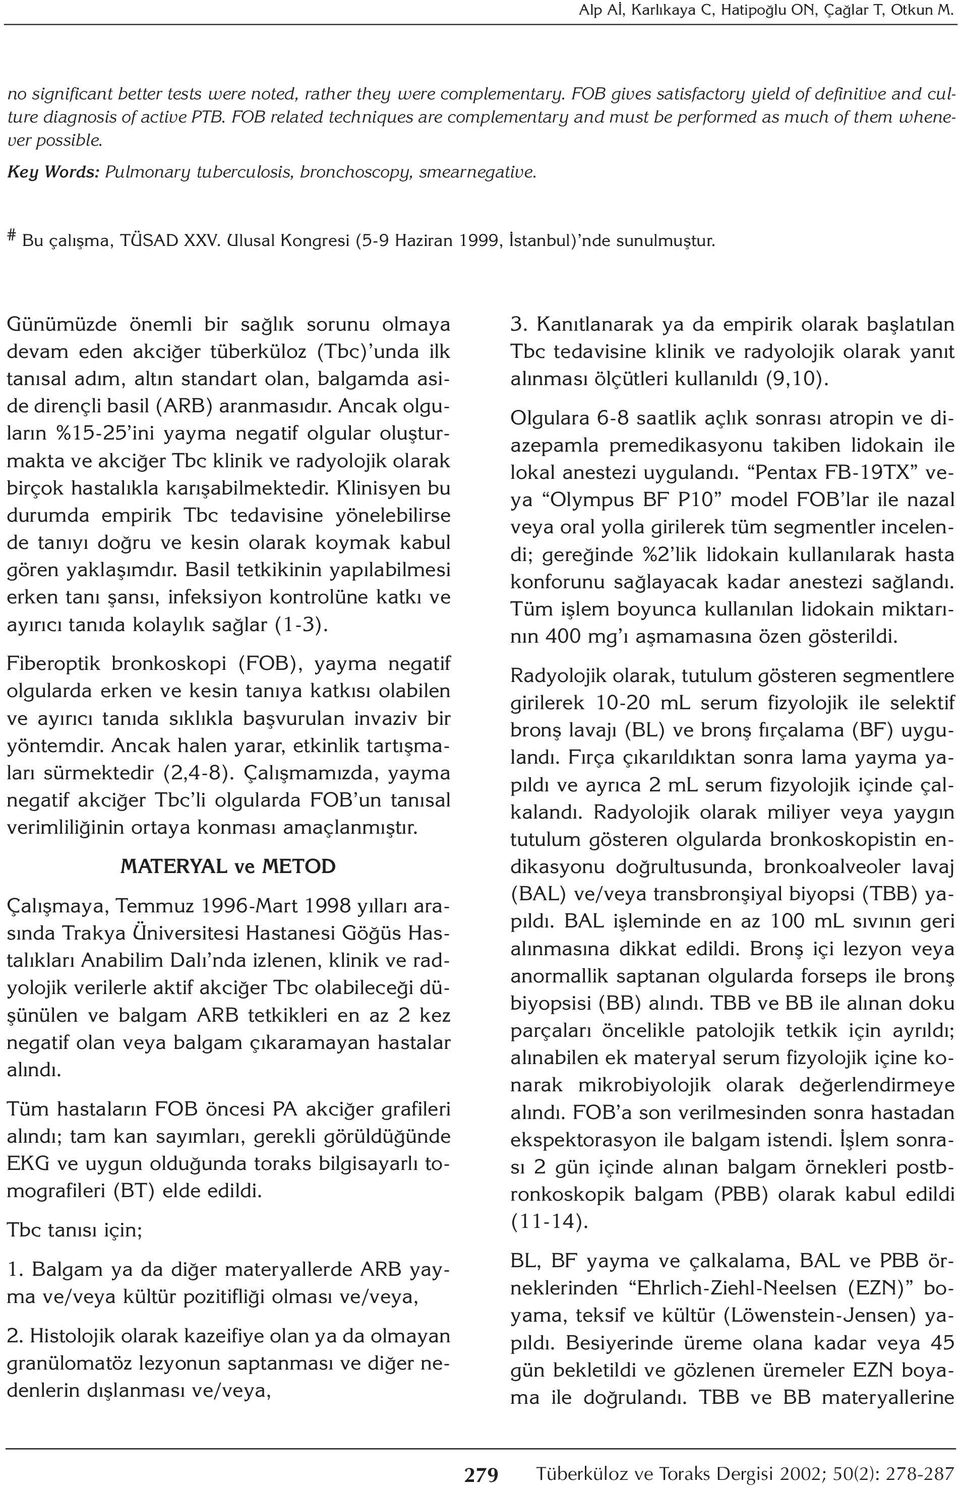 Key Words: Pulmonary tuberculosis, bronchoscopy, smearnegative. # Bu çalışma, TÜSAD XXV. Ulusal Kongresi (5-9 Haziran 1999, İstanbul) nde sunulmuştur.